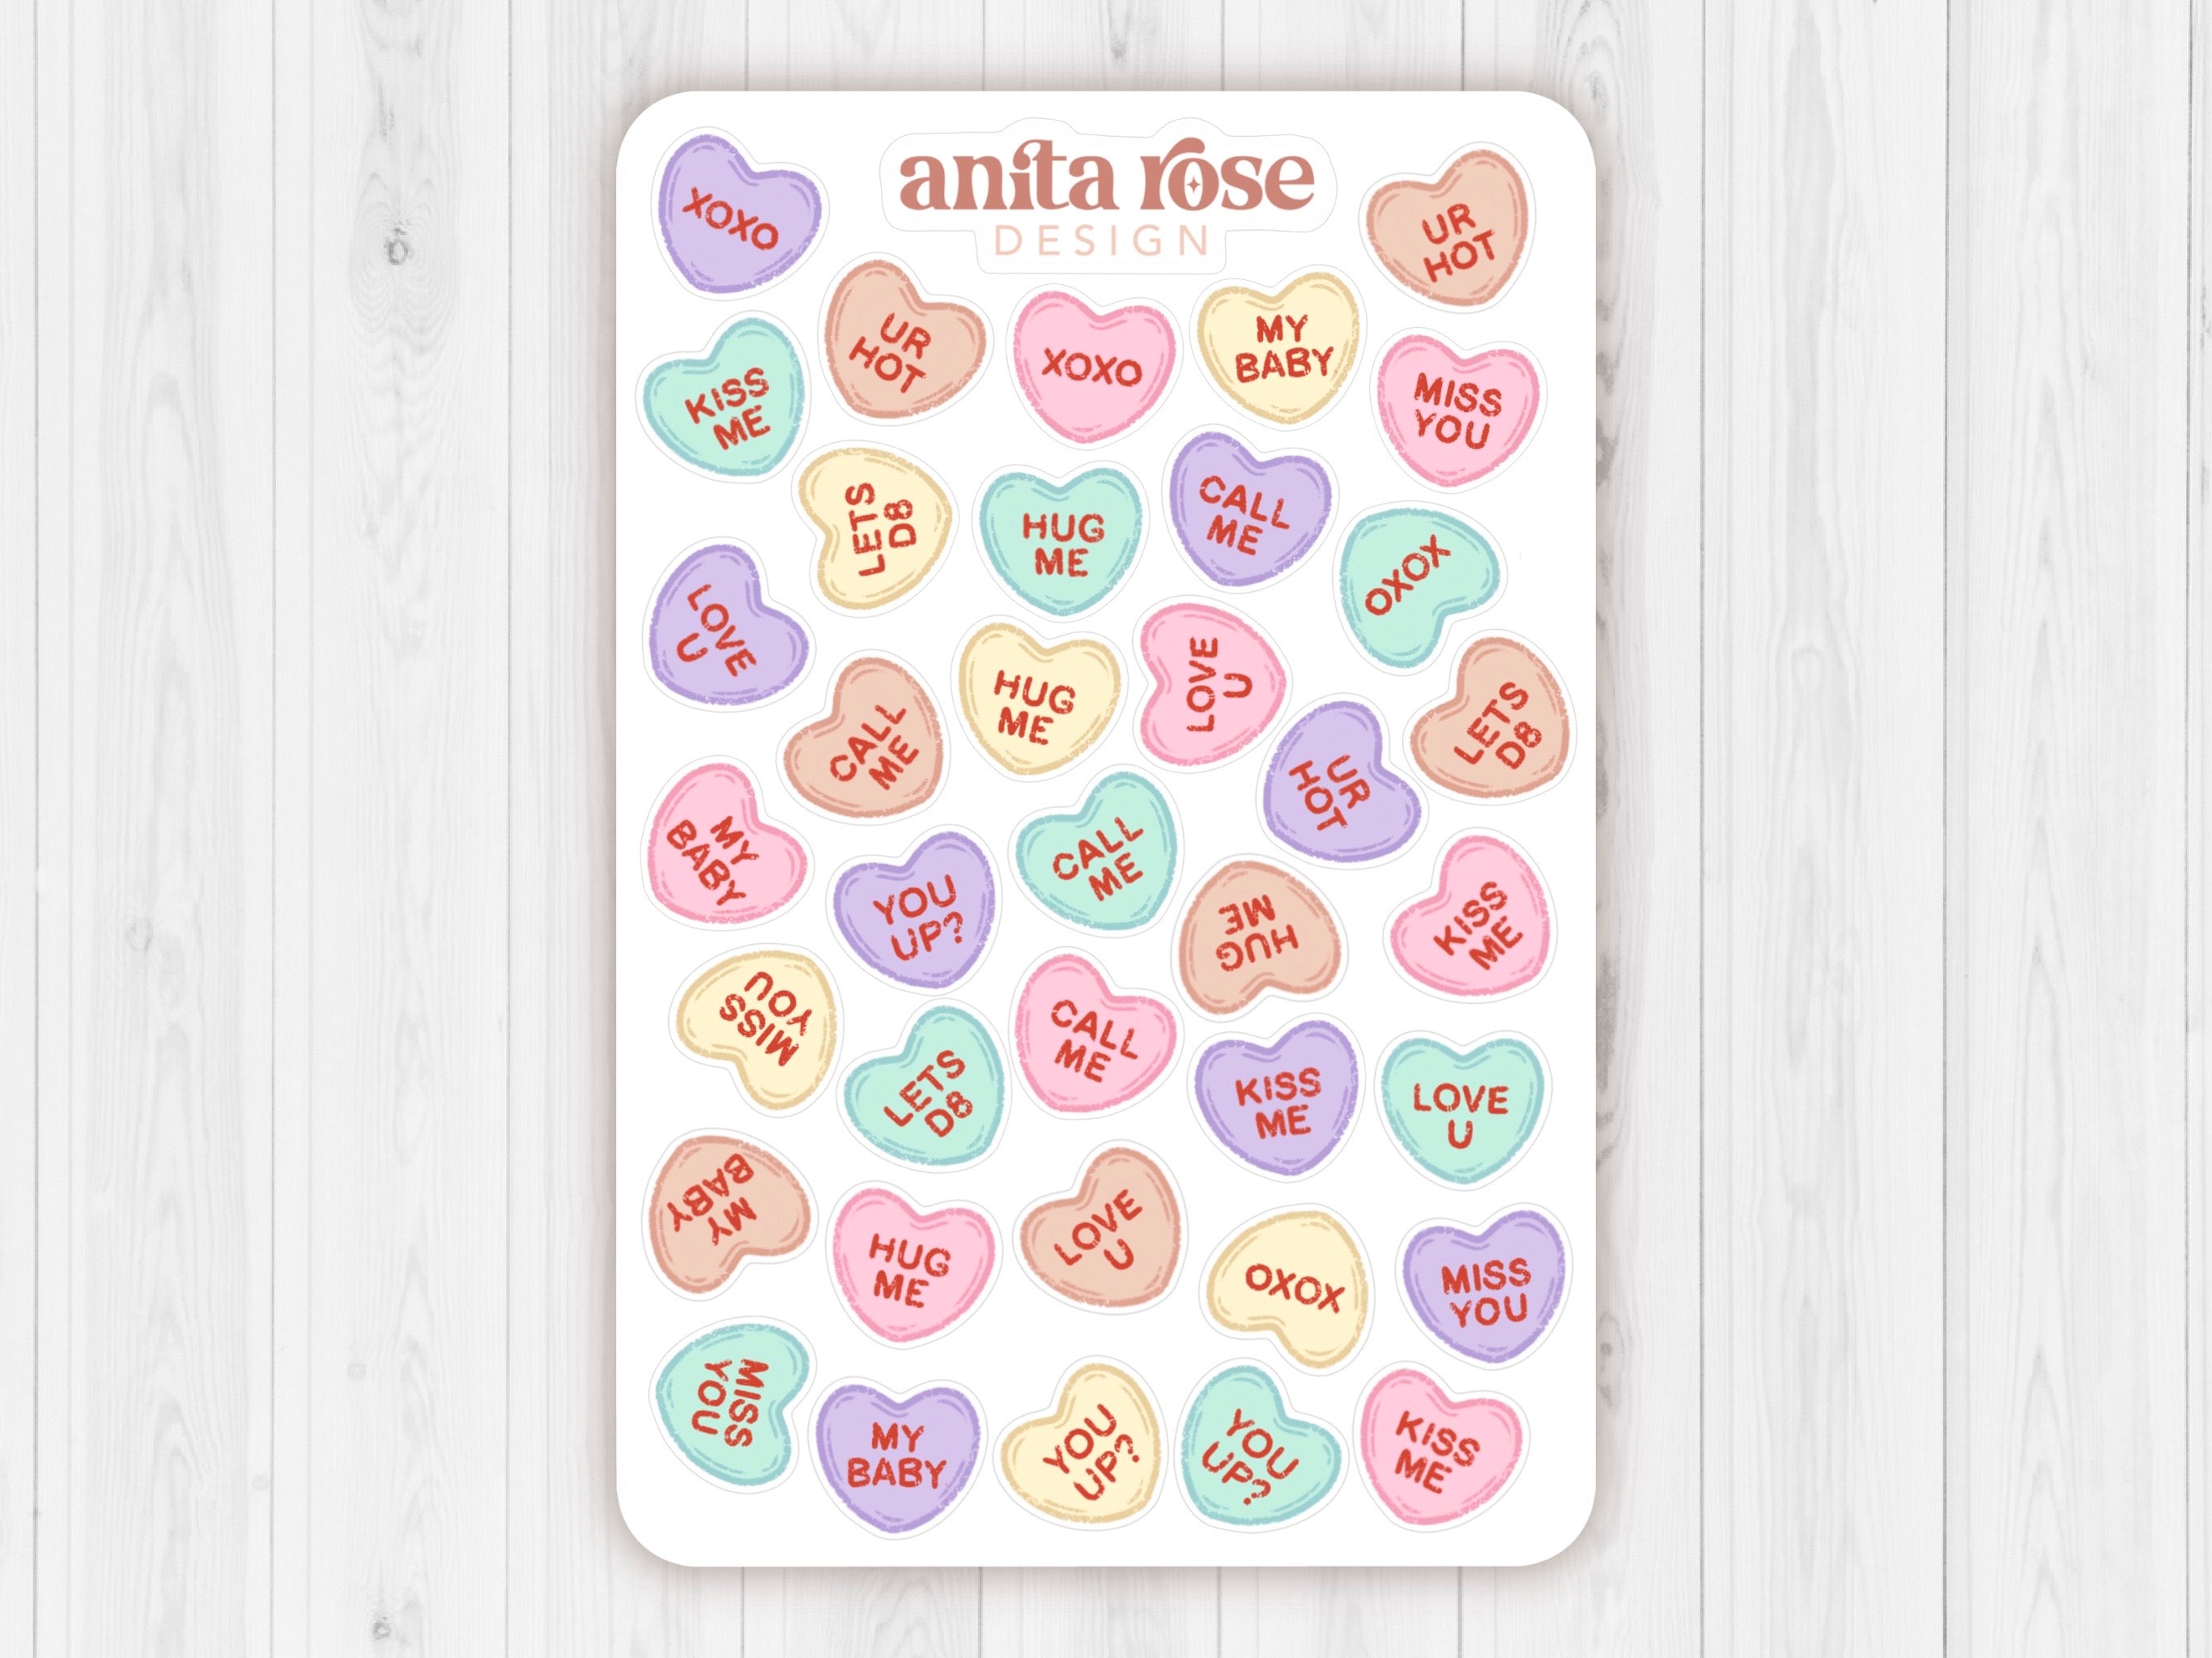 Pro-Valentine's Day Conversation Hearts Sticker Sheet